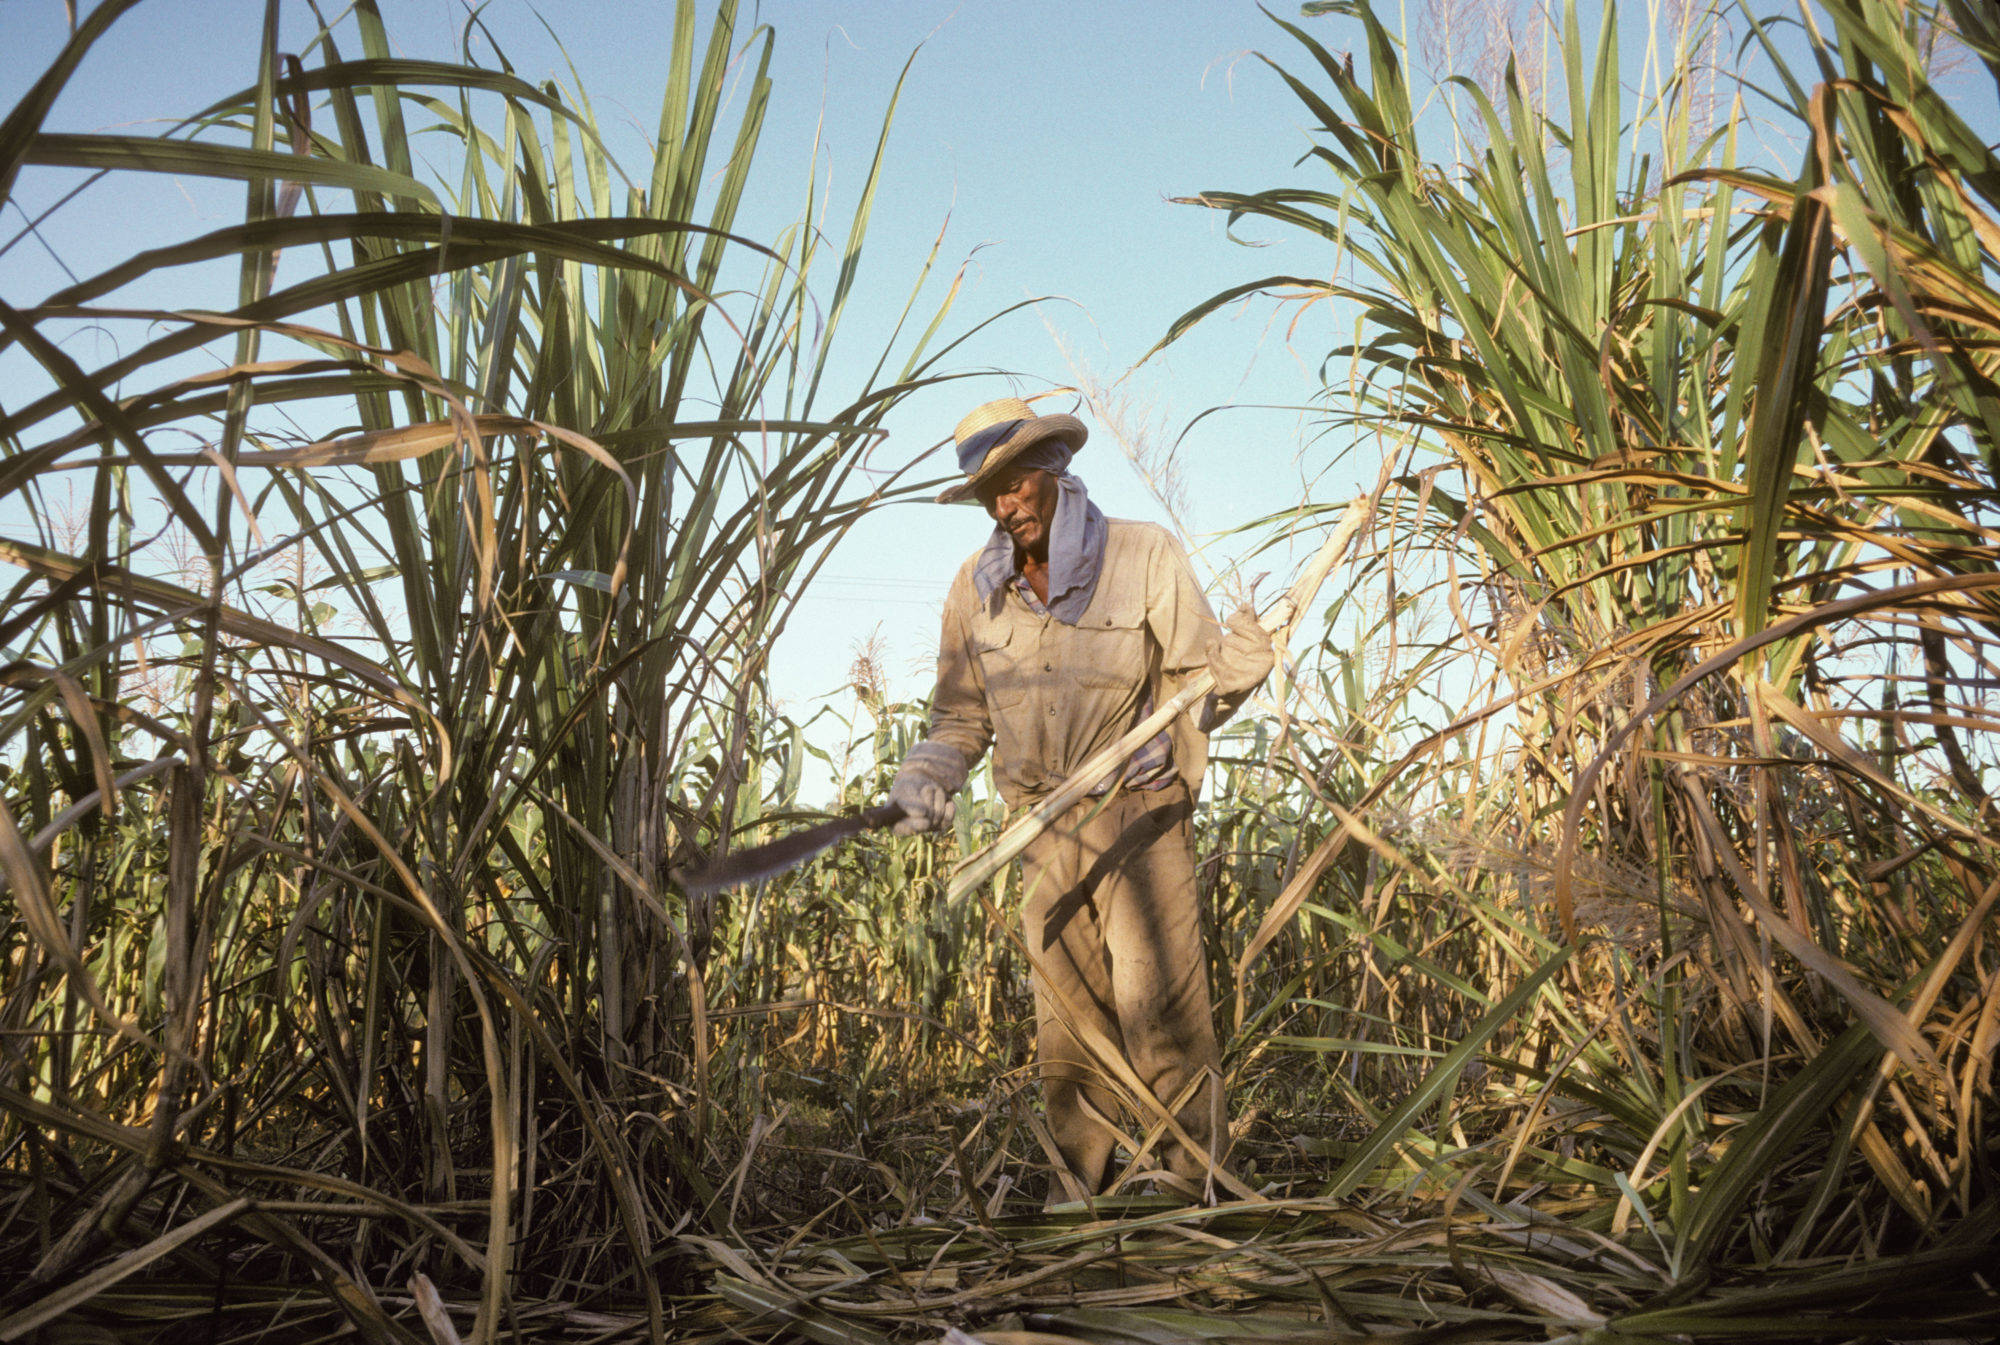 Cuba exports sugar cane to China